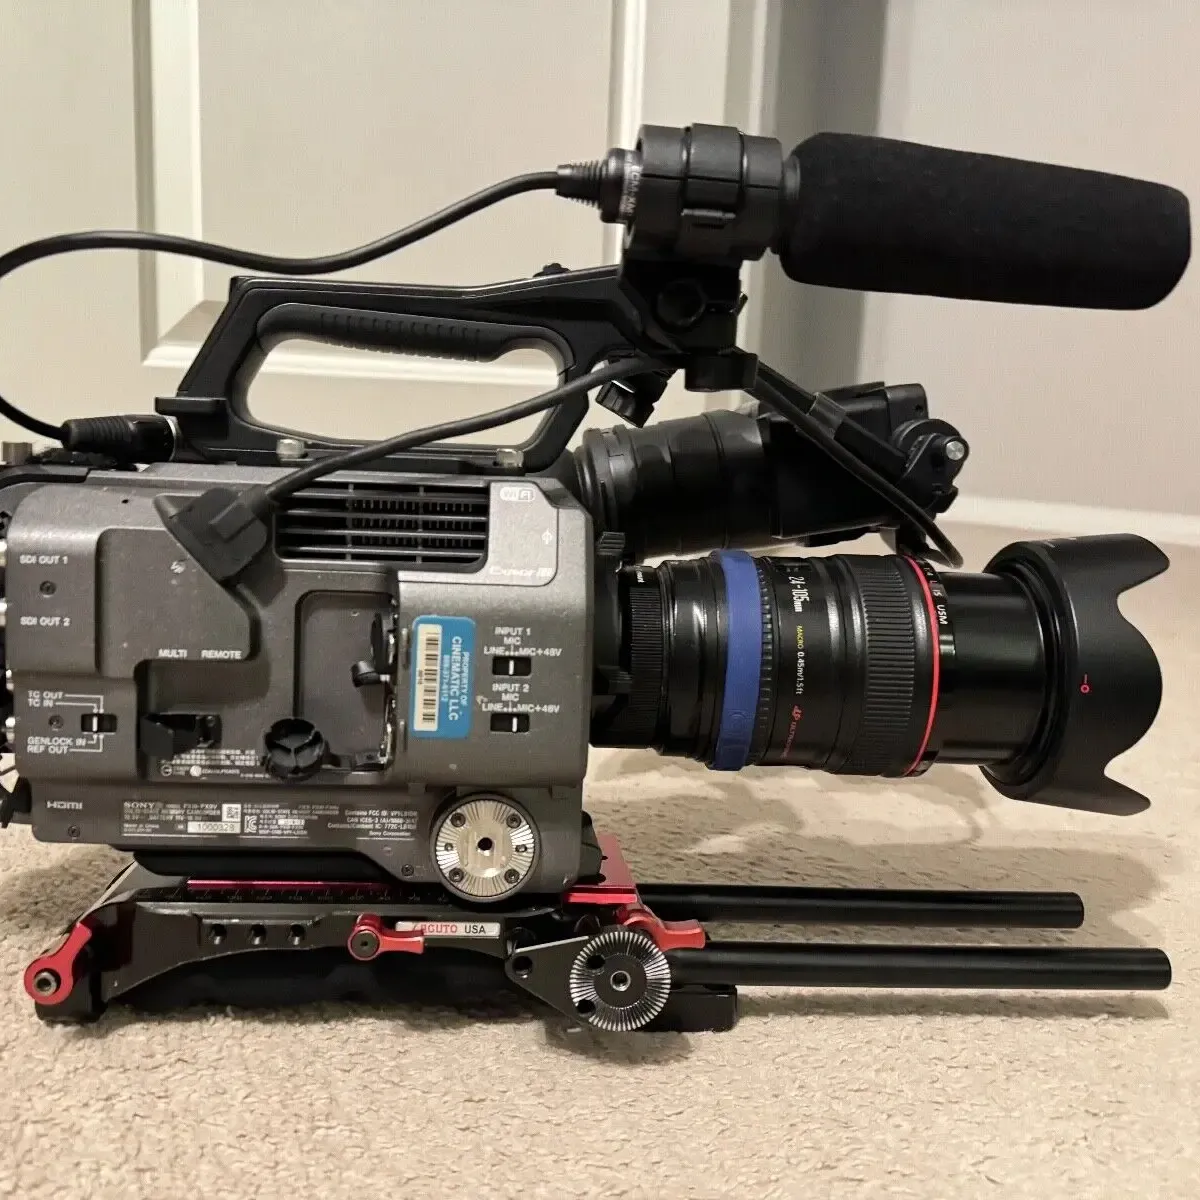 نظام كاميرا تصوير كامل الإطار 6K طراز PXW-FX9 XDCAM أصلي جديد تمامًا كاميرا فيديو بعدستين